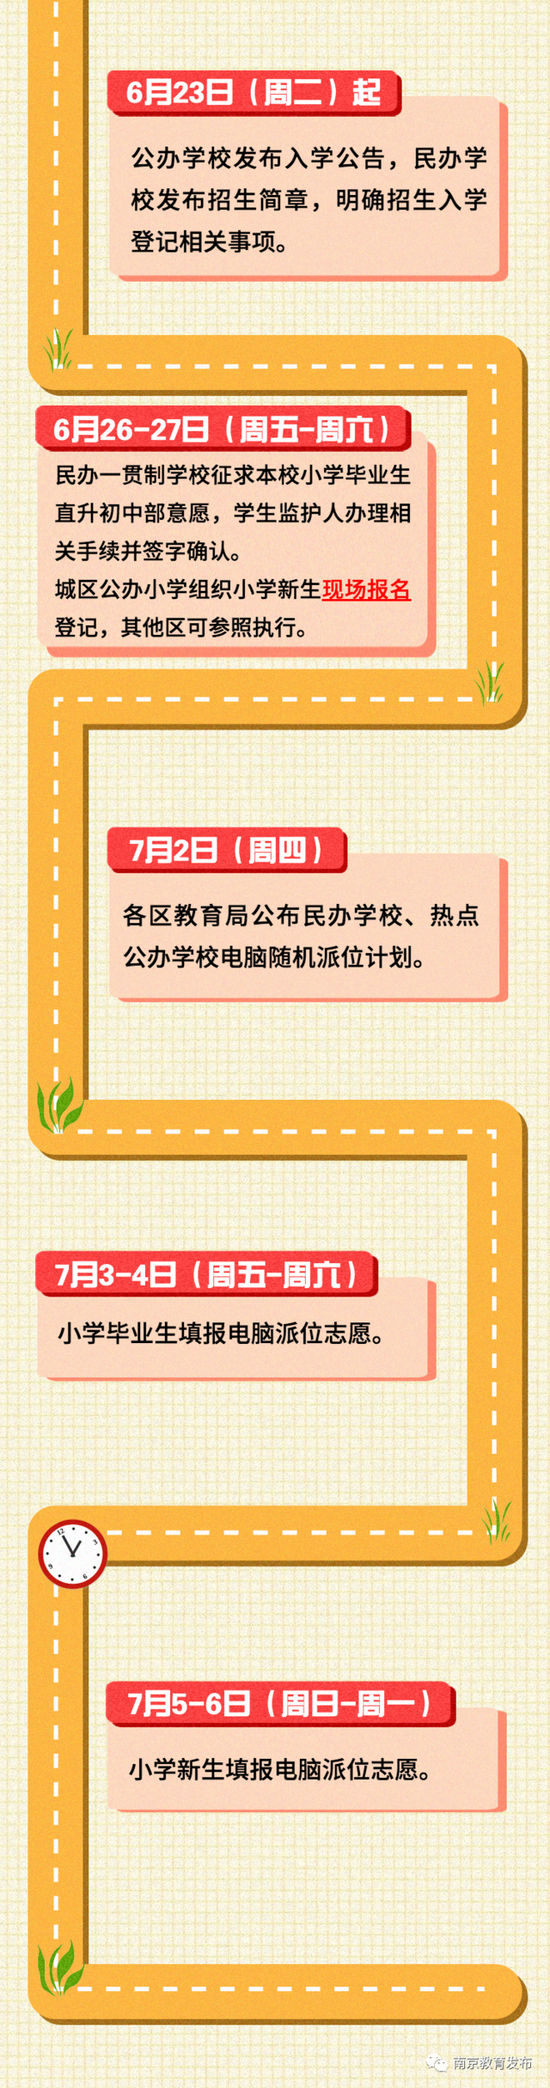 2020南京高考学校成_中国人民大学、南京大学等双一流高校2020招生政策